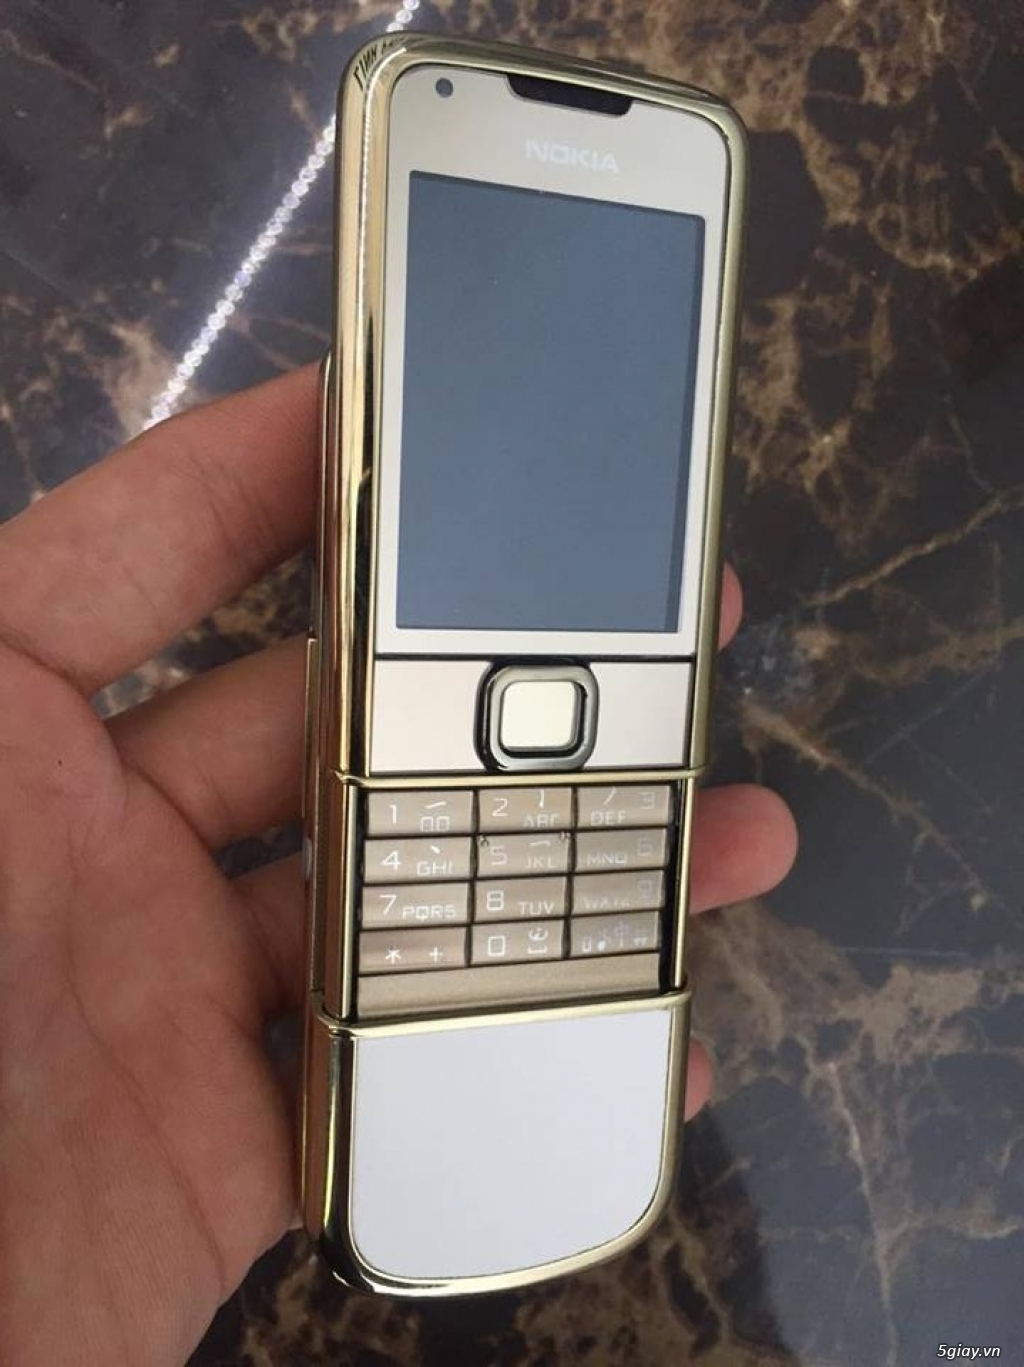 Bán Nokia 8800 gold Arte lên vỏ mới giá rẻ có bảo hành 12 tháng tại - 7